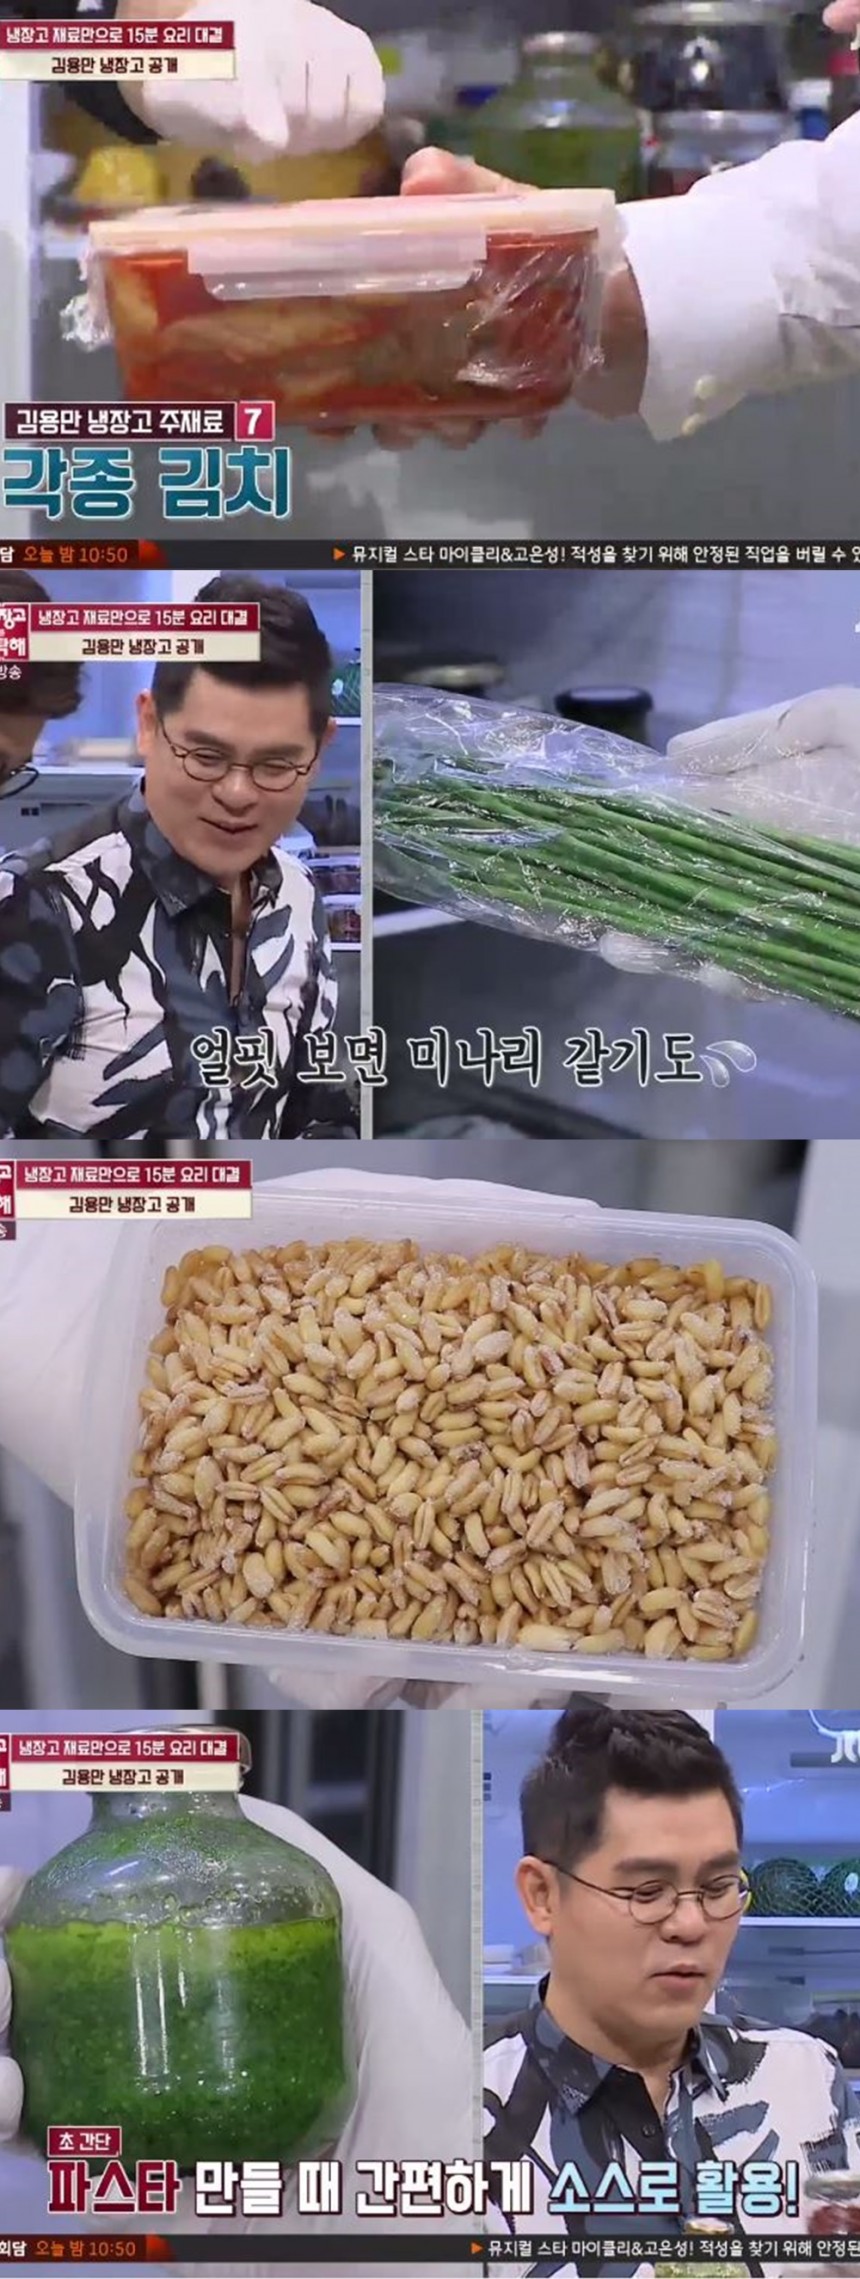 ‘냉장고를 부탁해’ 방송장면/JTBC